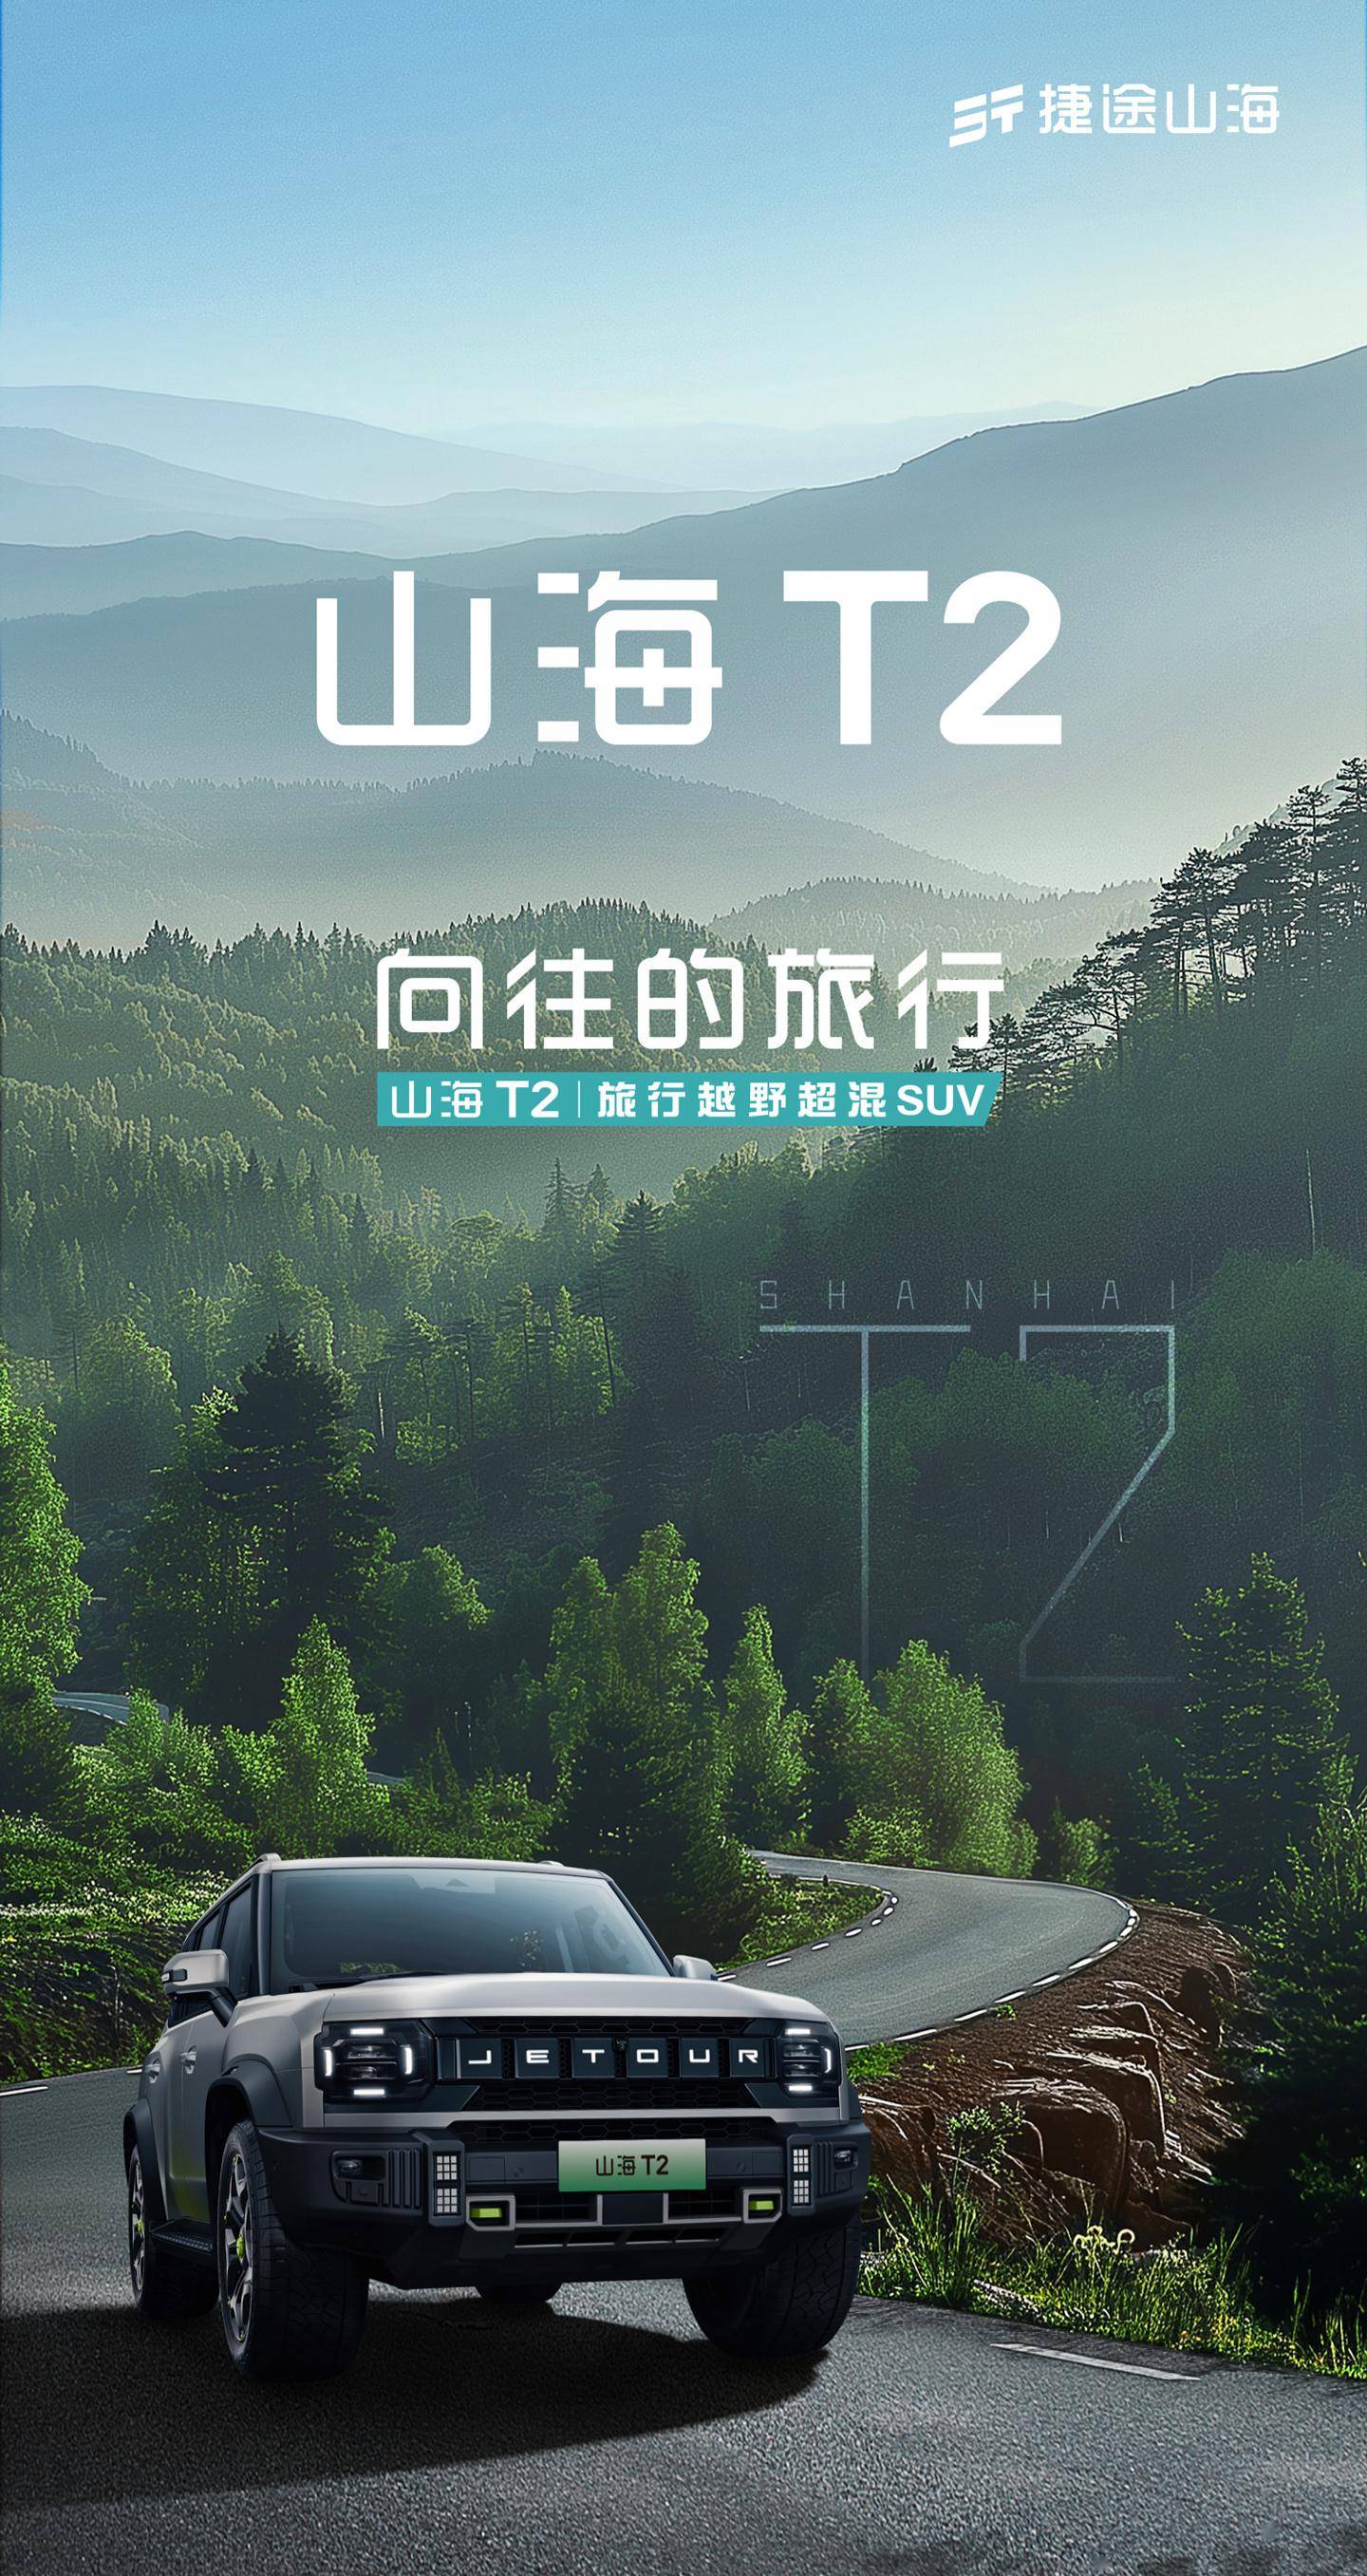 旅行:奇瑞捷途旅行者混动版定名山海 T2旅行，4 月北京车展前后上市